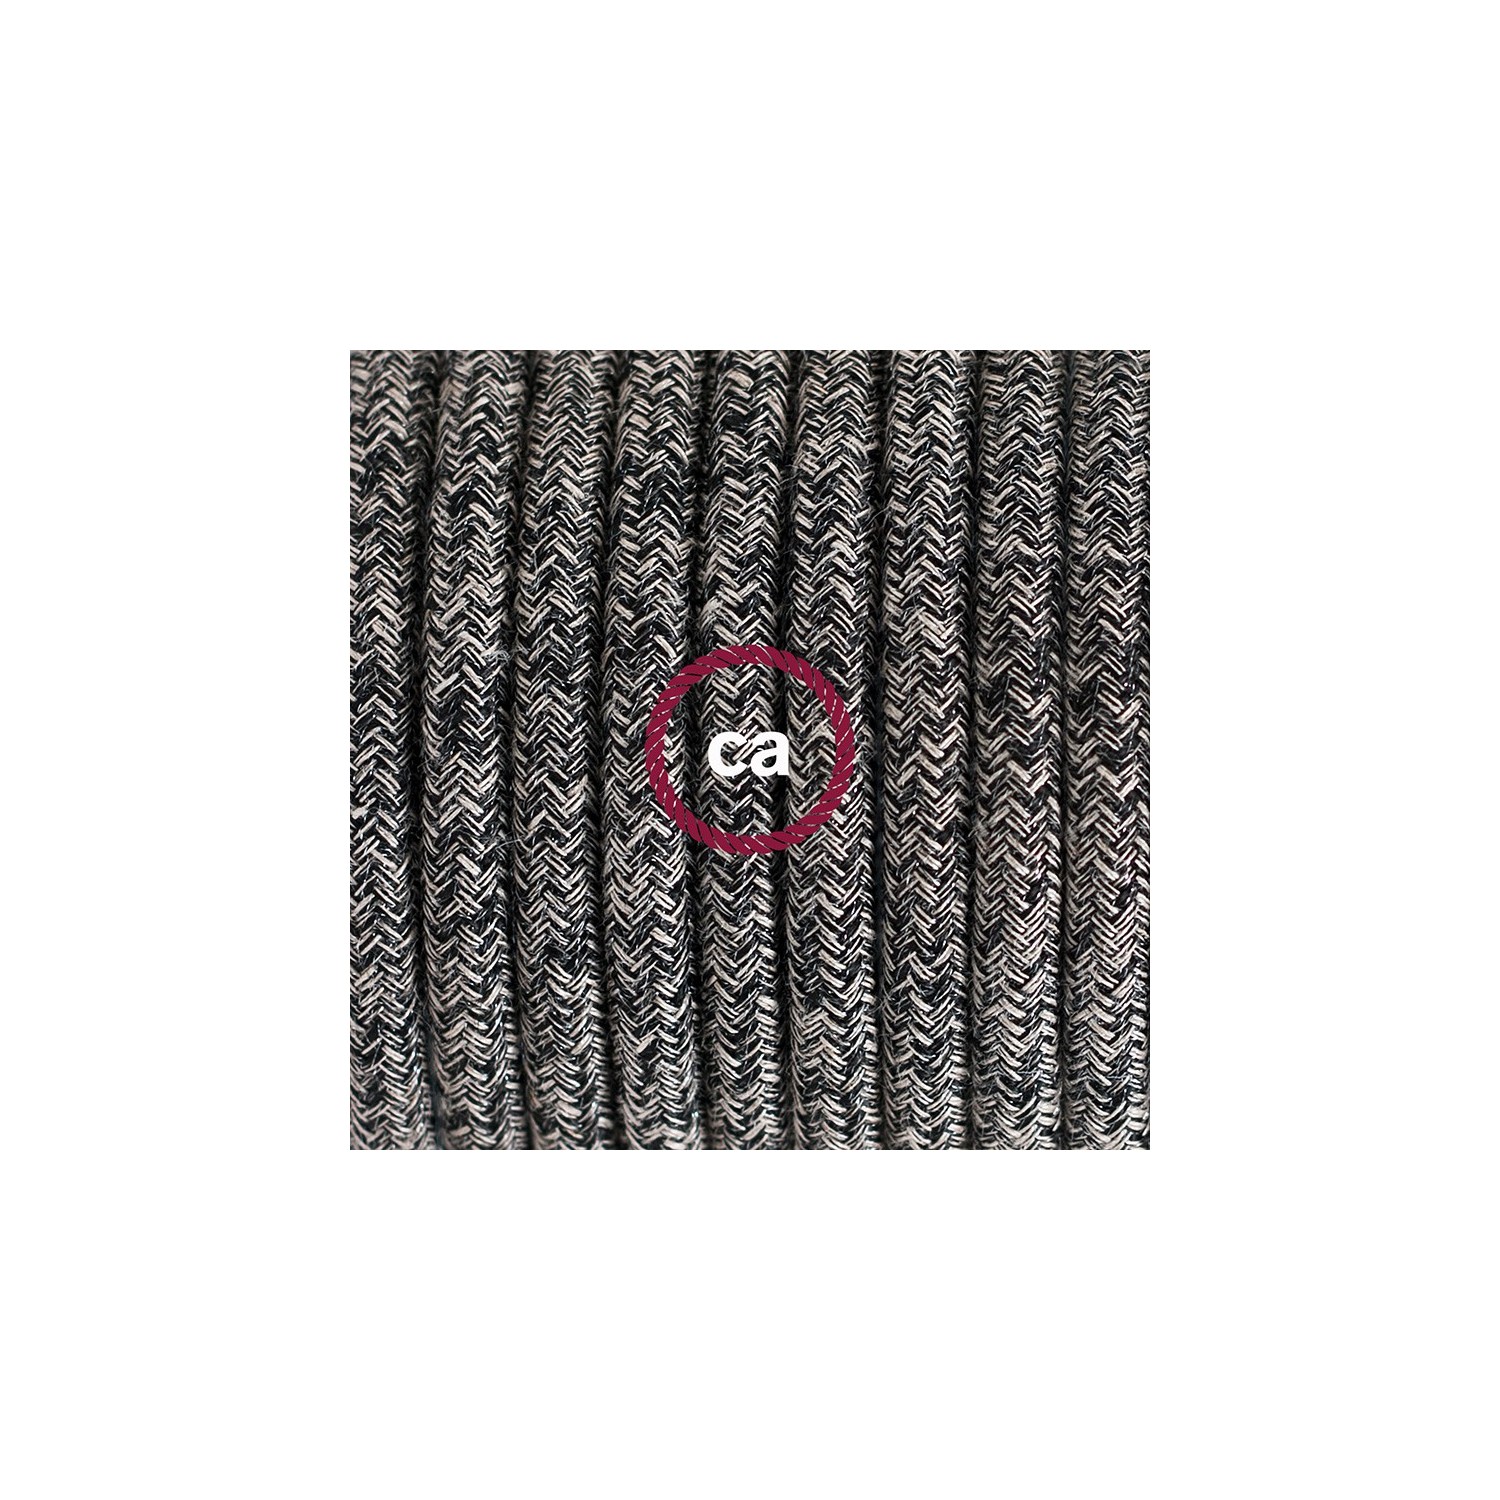 Ronde flexibele textielkabel van katoen met schakelaar en stekker. RS81 - onyx tweed zwart. linnen and glitter 1,80 m.